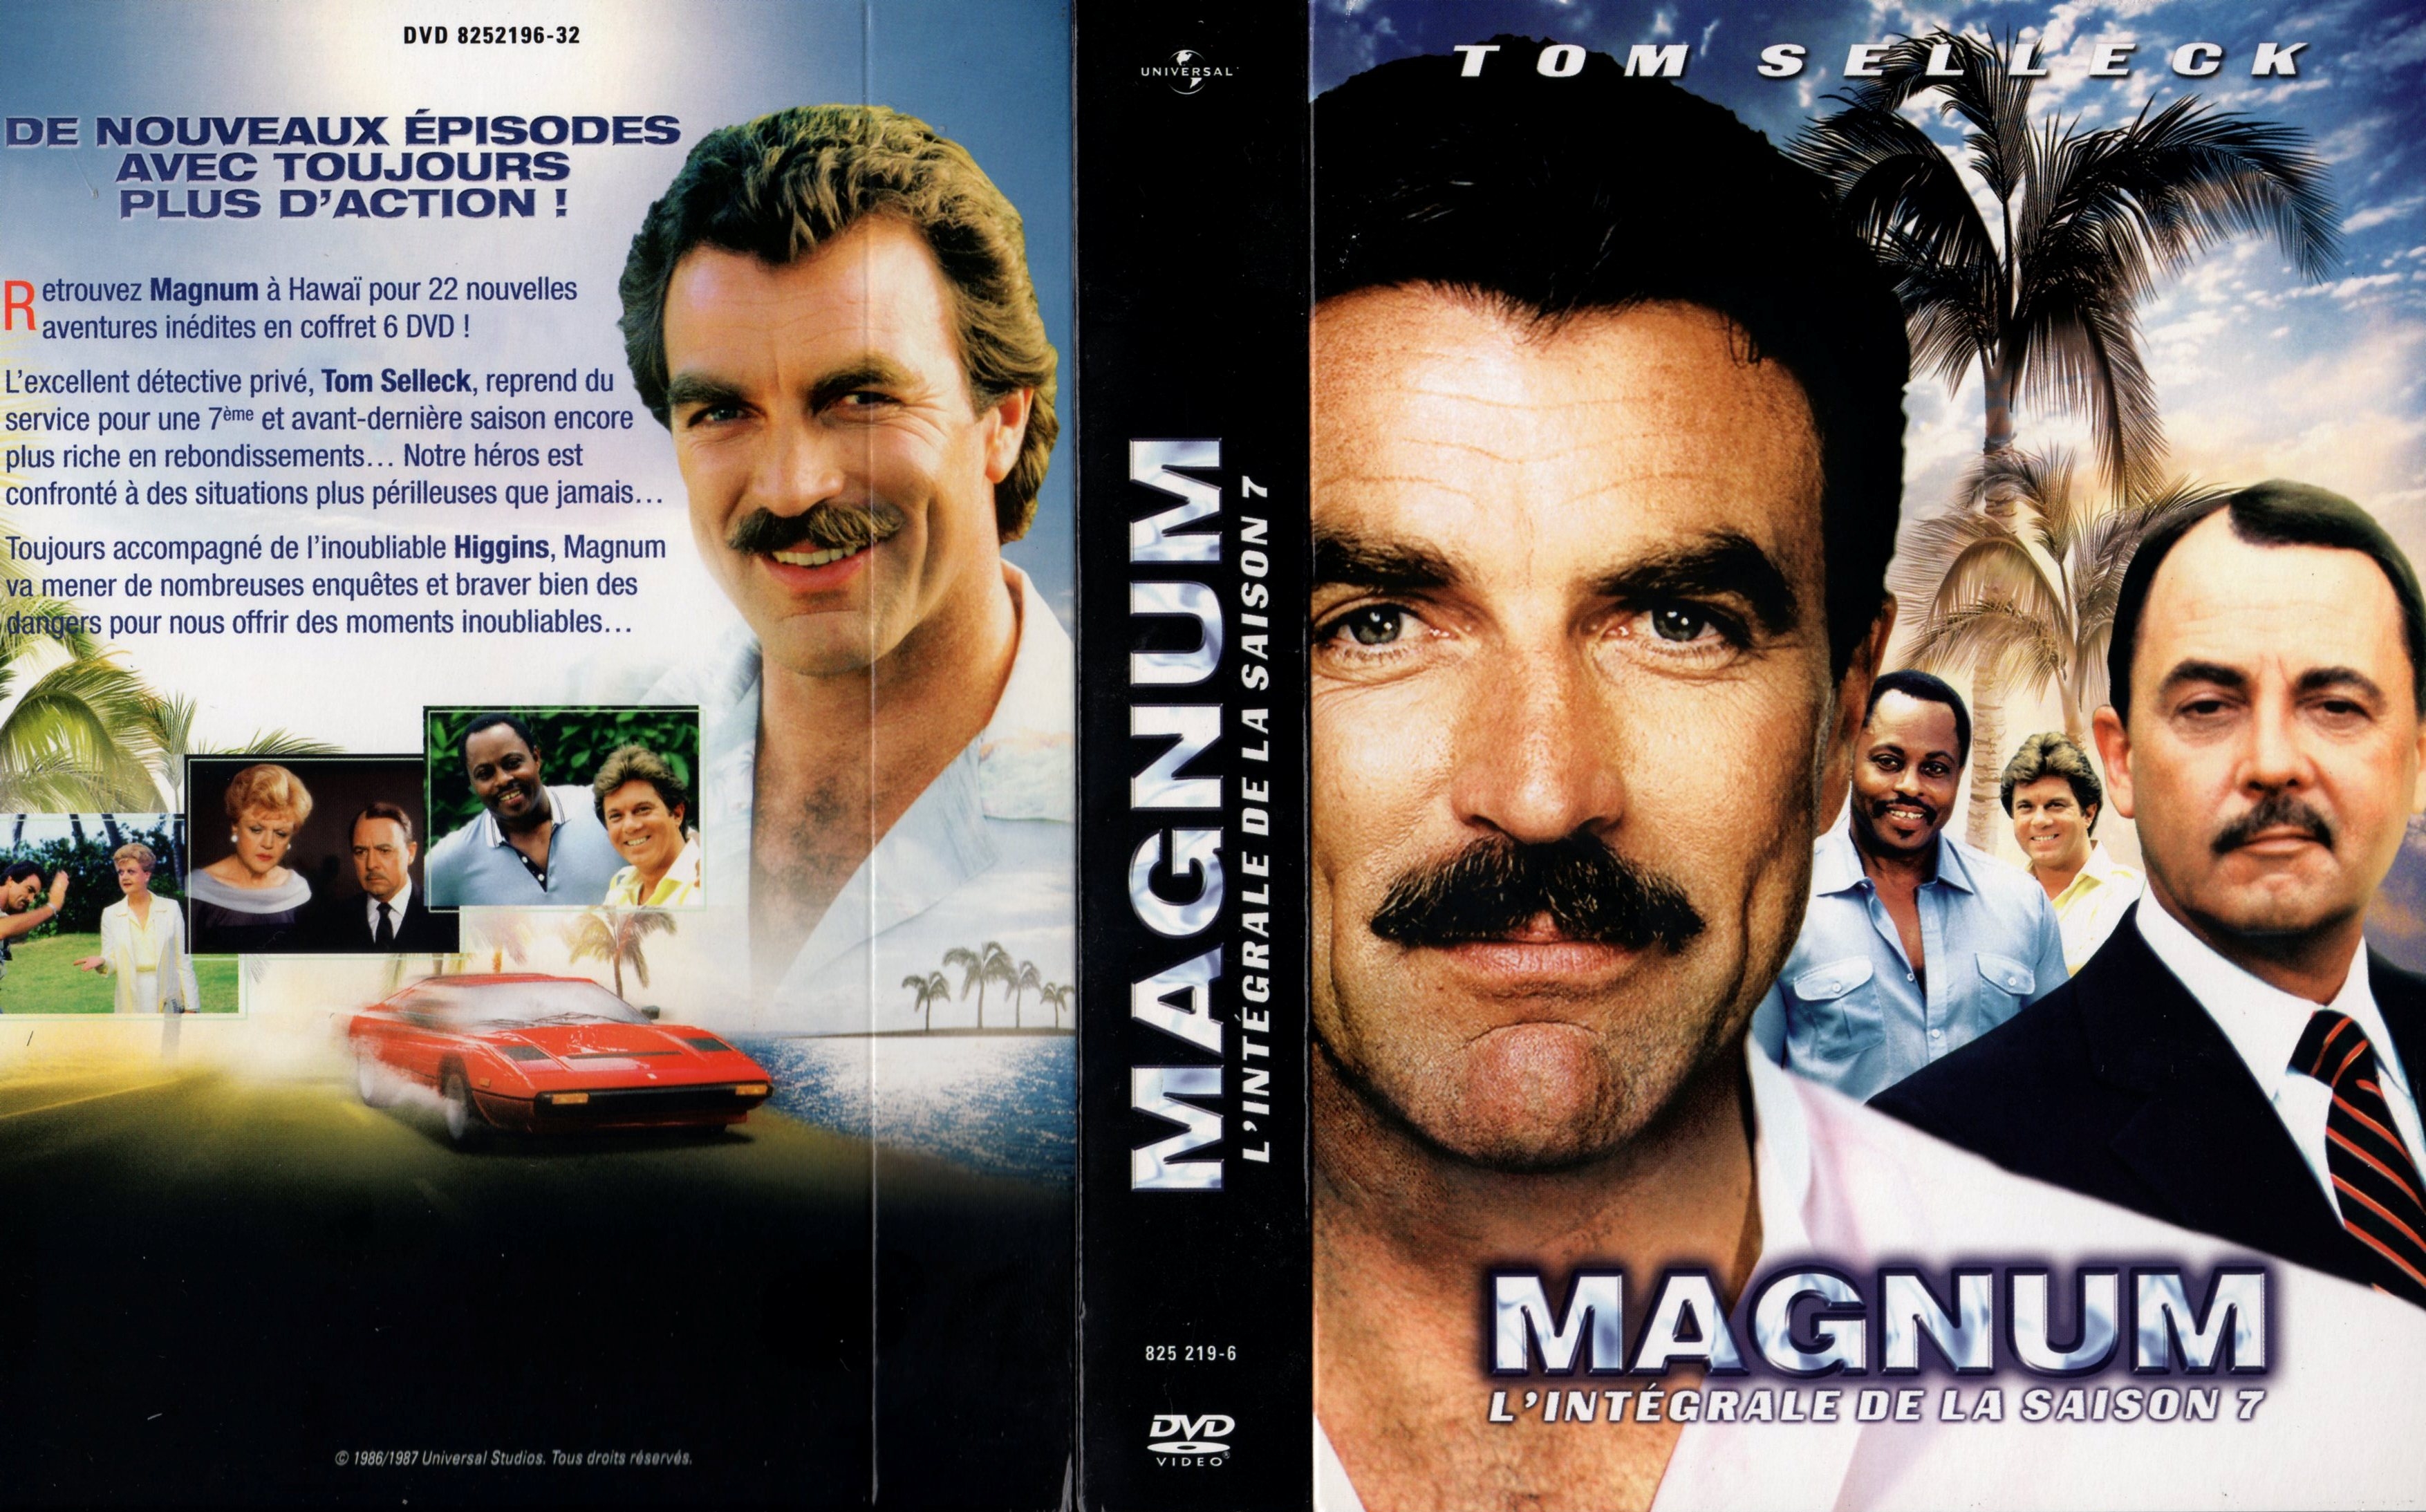 Jaquette DVD Magnum Saison 7 COFFRET